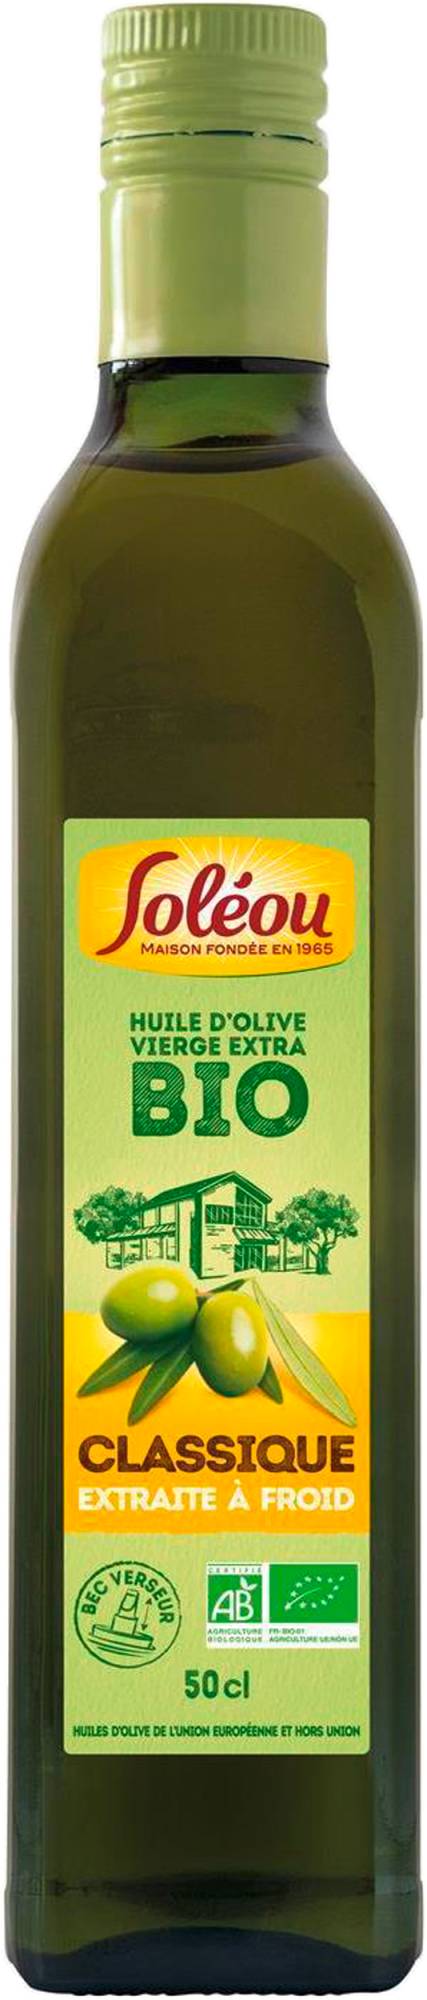 AUCHAN Huile d'olive vierge extra classique origine Espagne 1l pas cher 